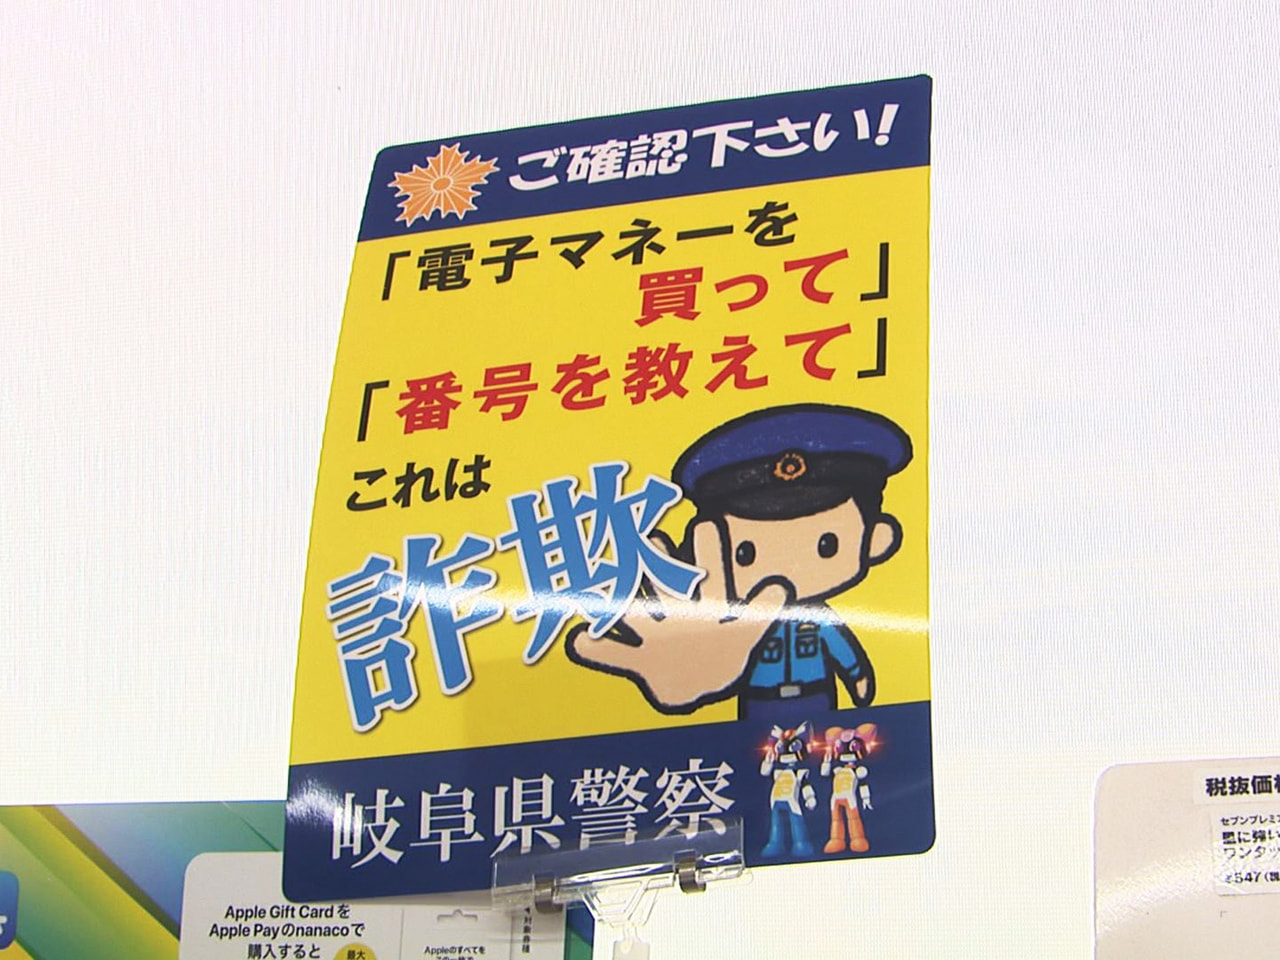 電子マネーカードを悪用した架空料金請求詐欺が県内で急増していることから、岐阜県警...